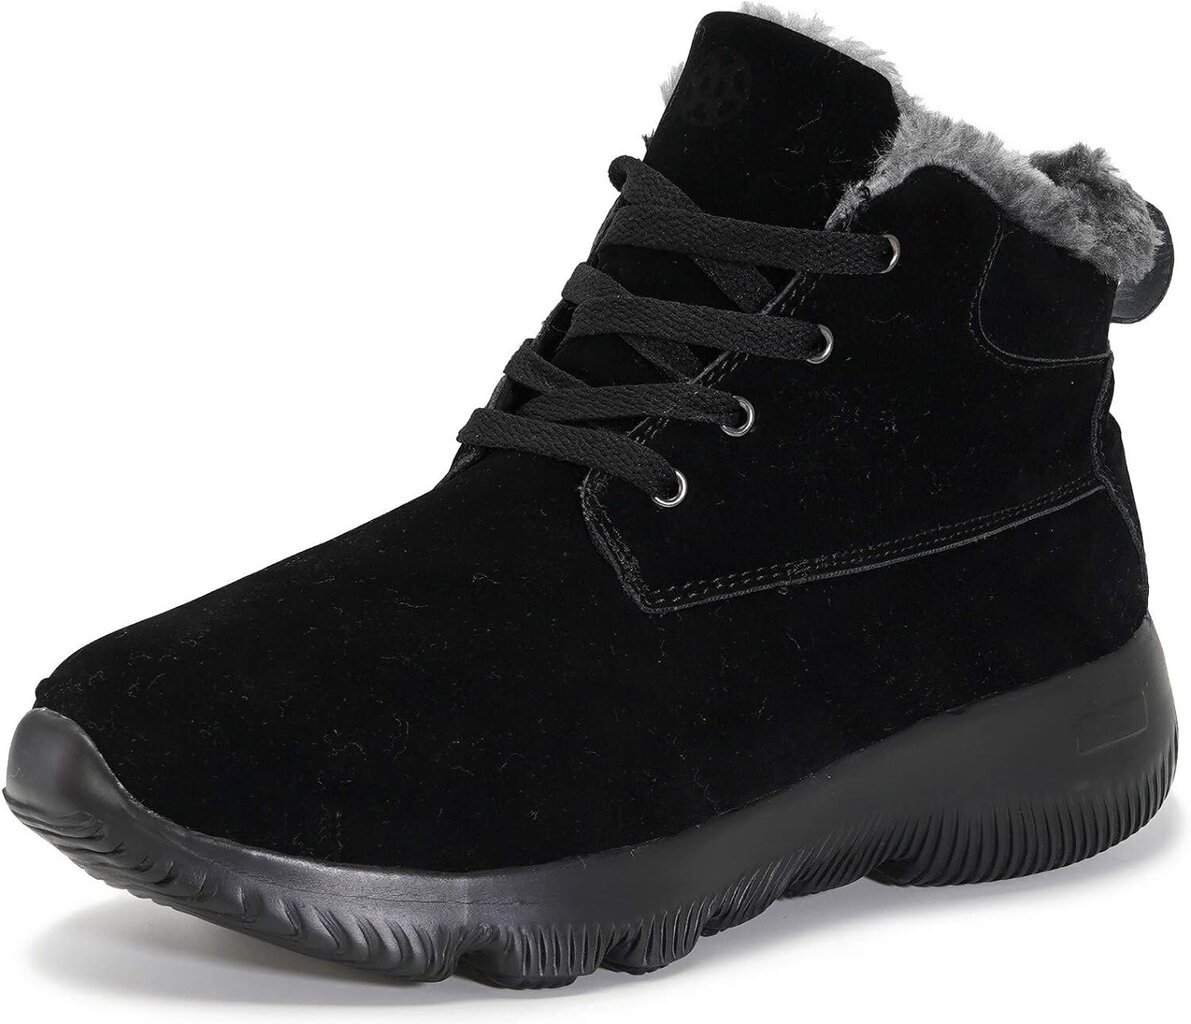 Unisex Gaatpot Зимние ботинки, черные цена